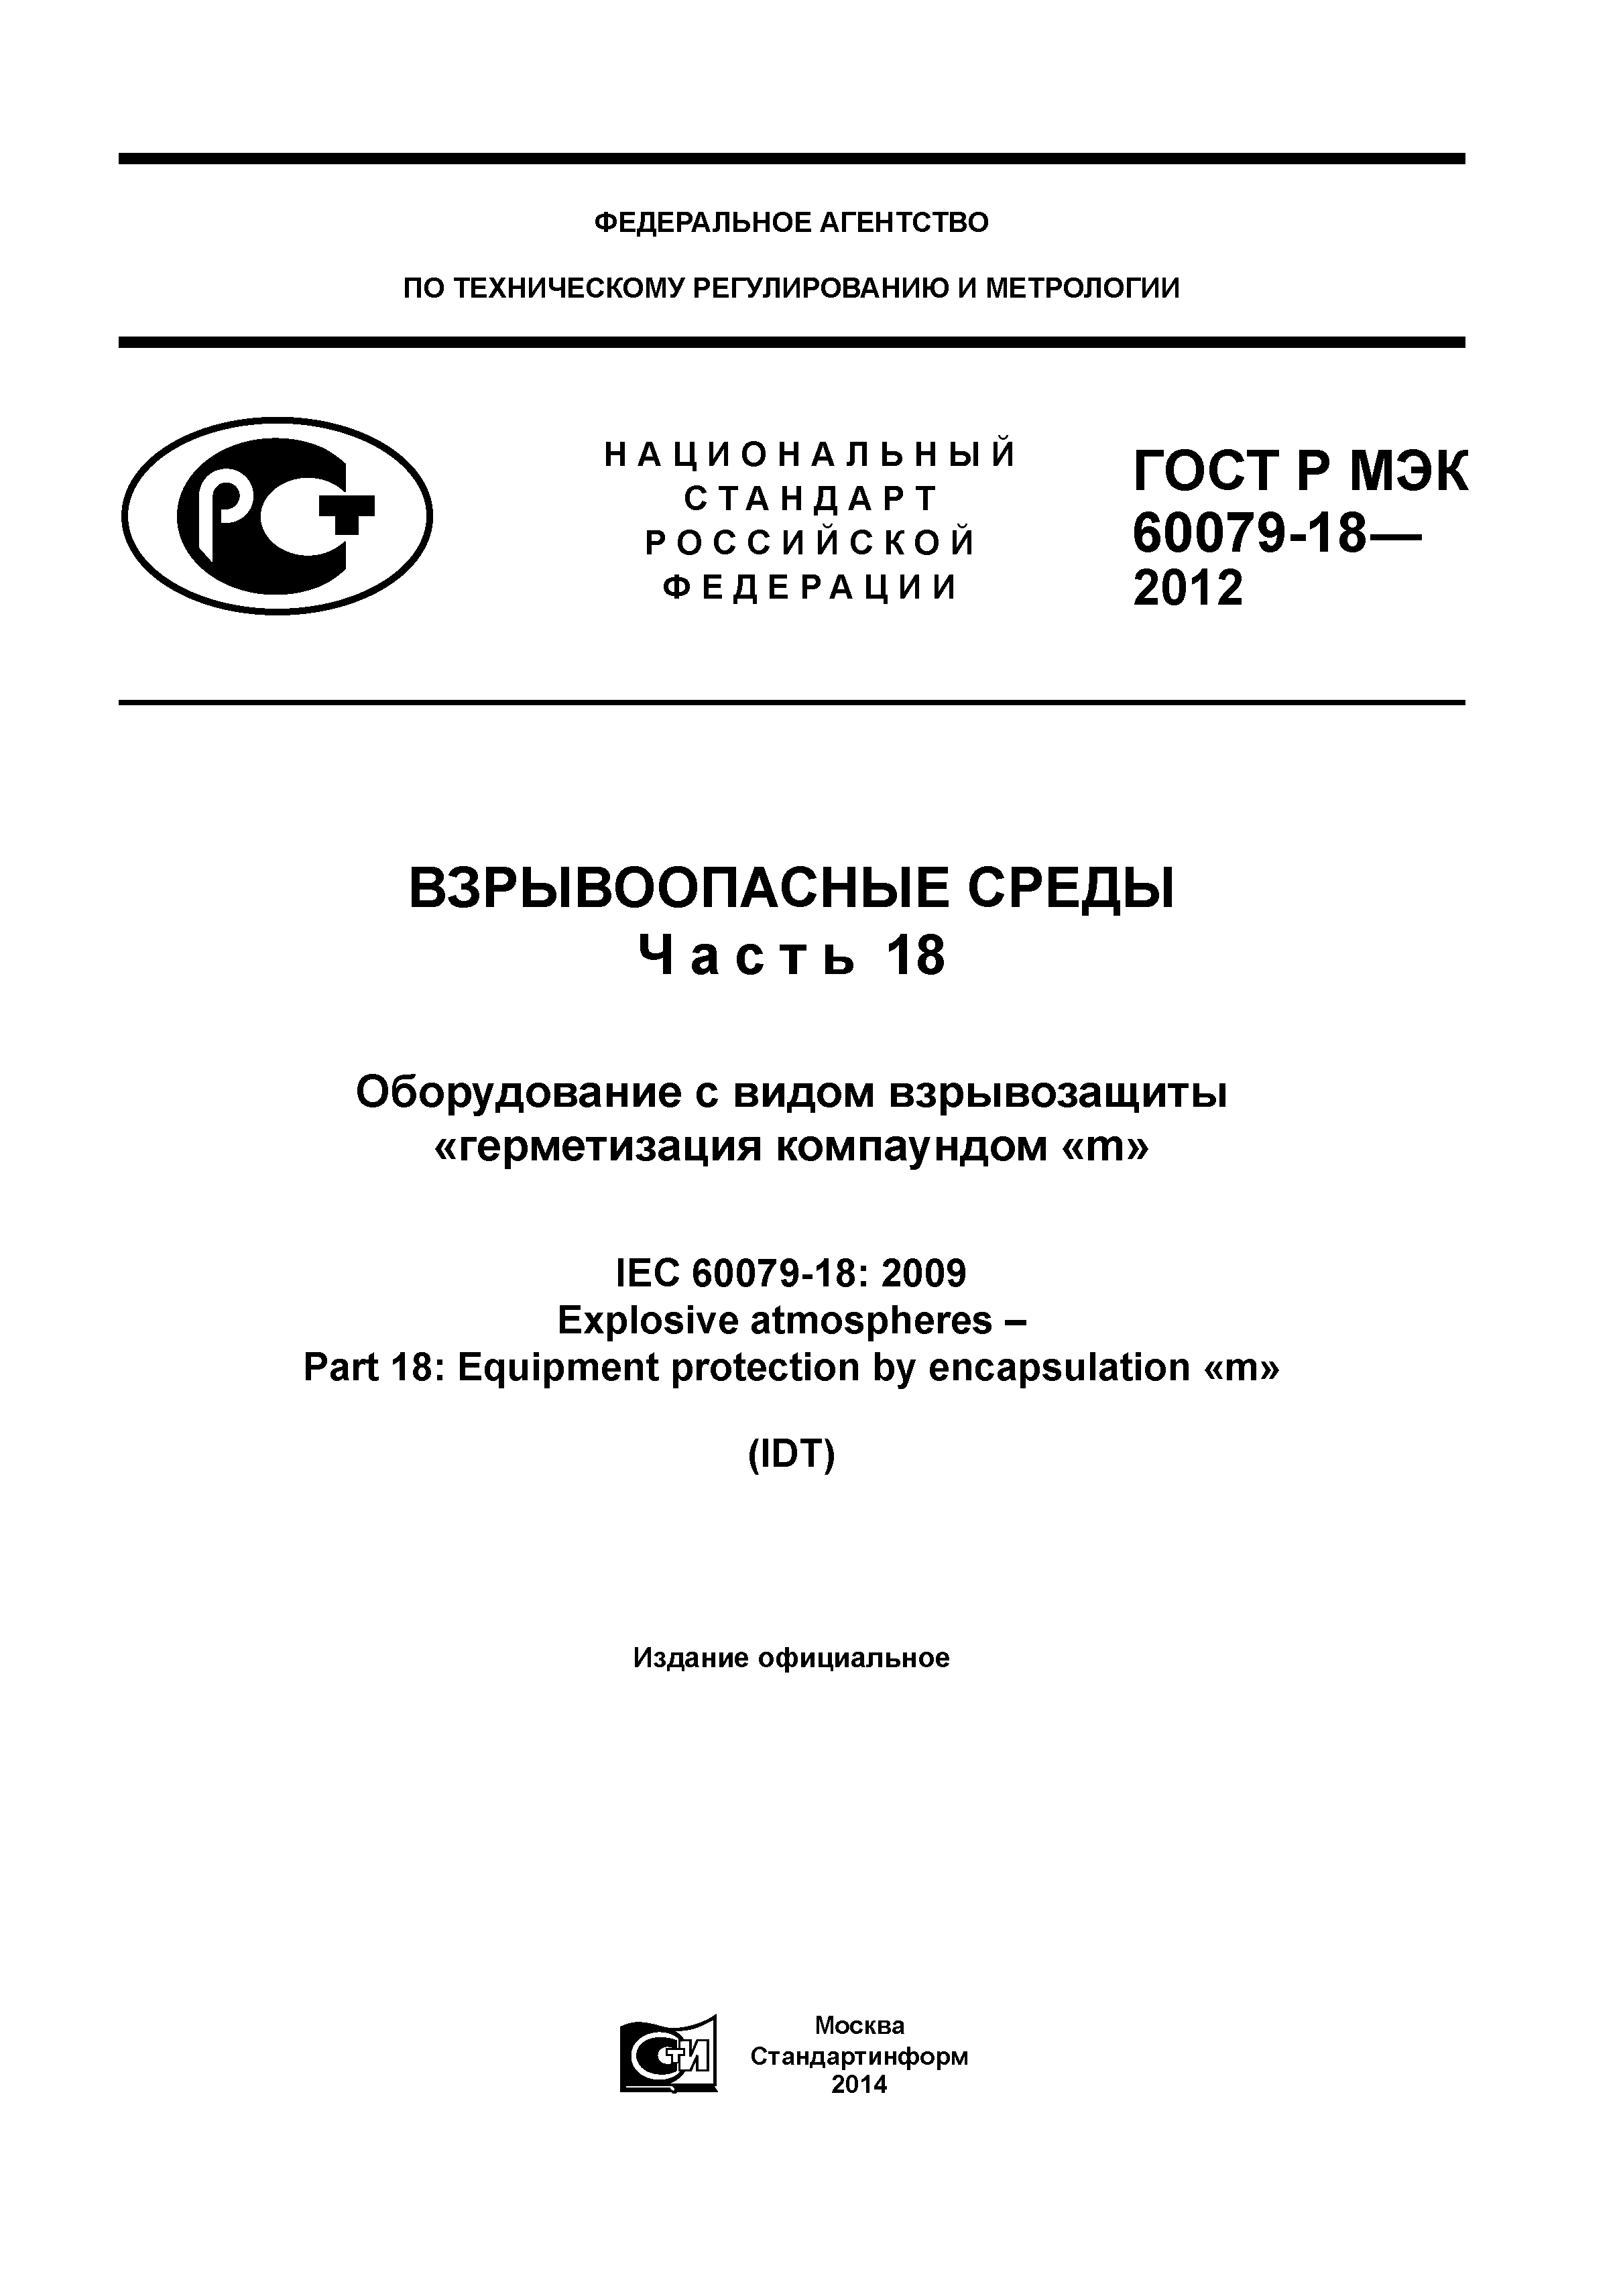 ГОСТ Р МЭК 60079-18-2012